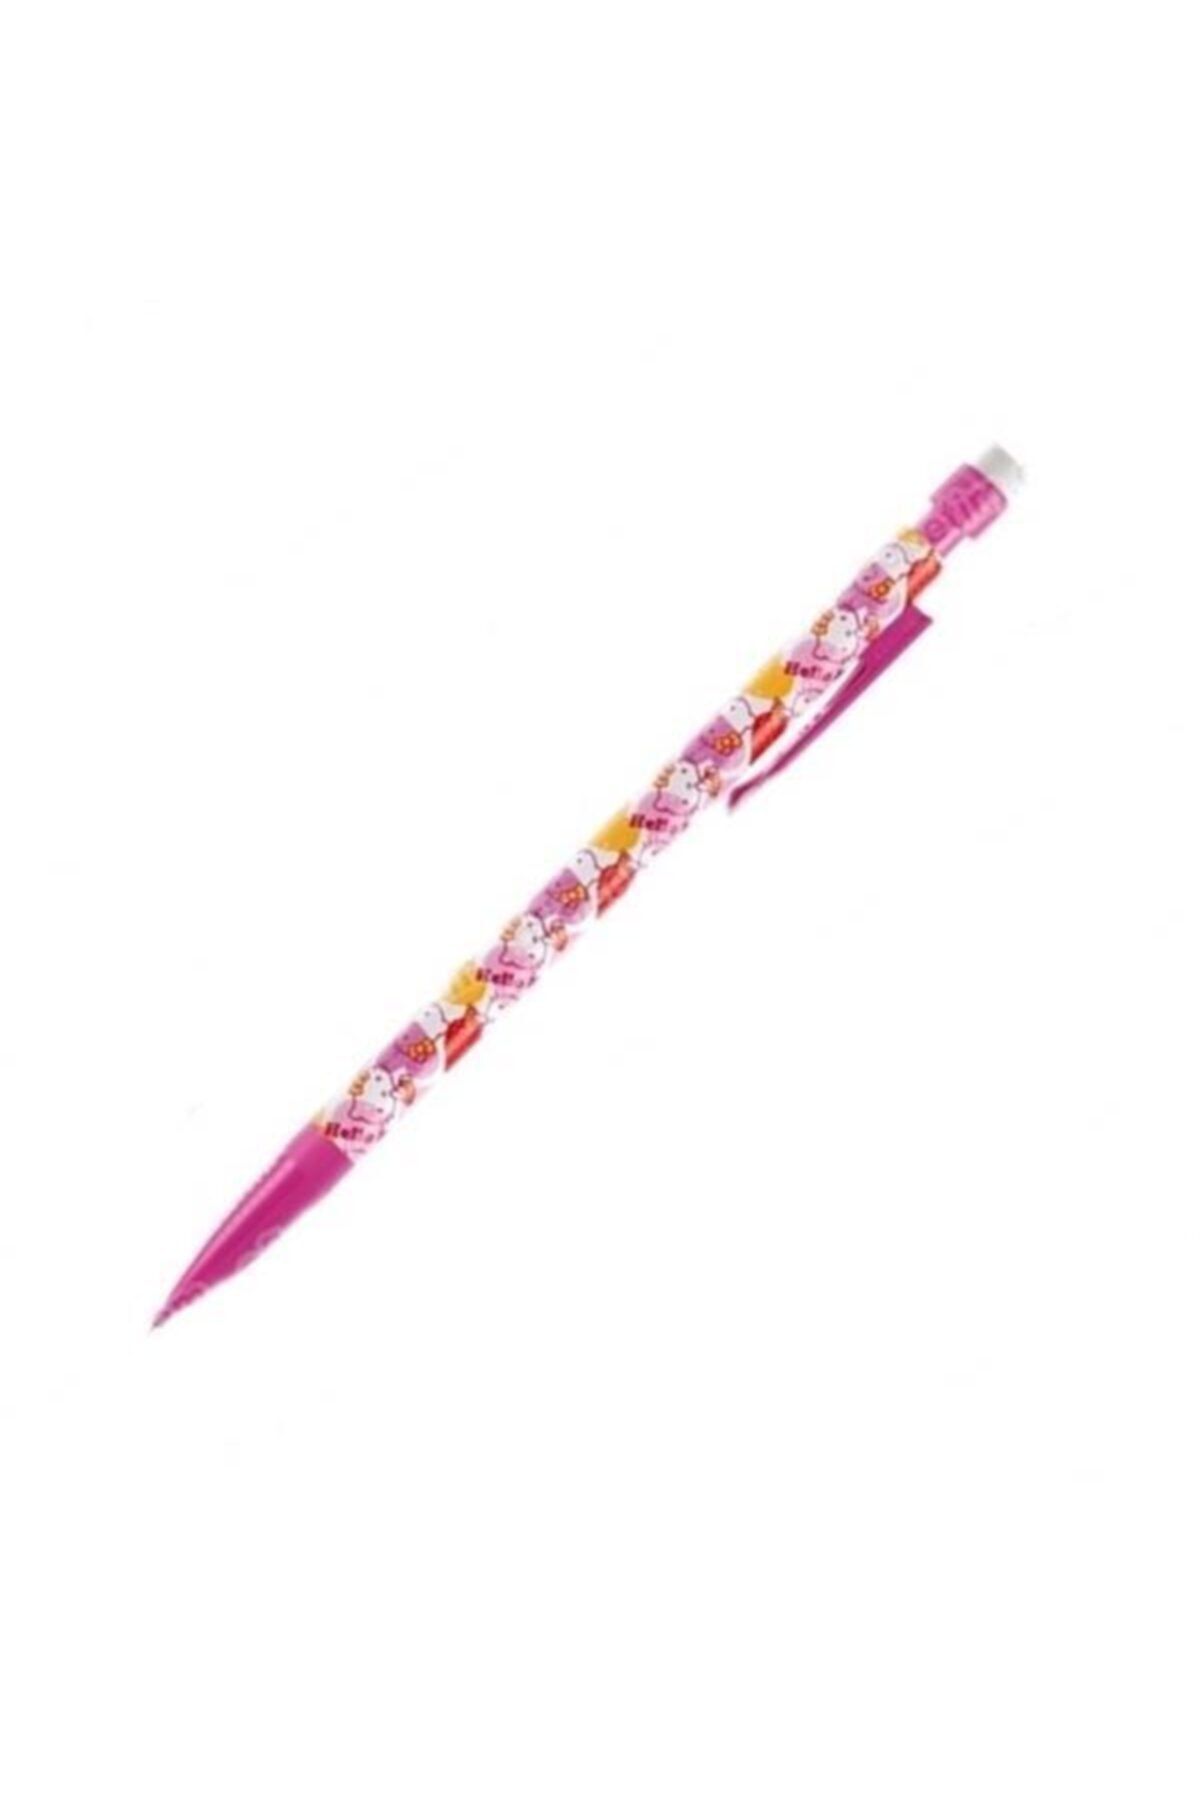 Bic Hello Kitty Yazılı 0,7 Uçlu Kalem Silgili